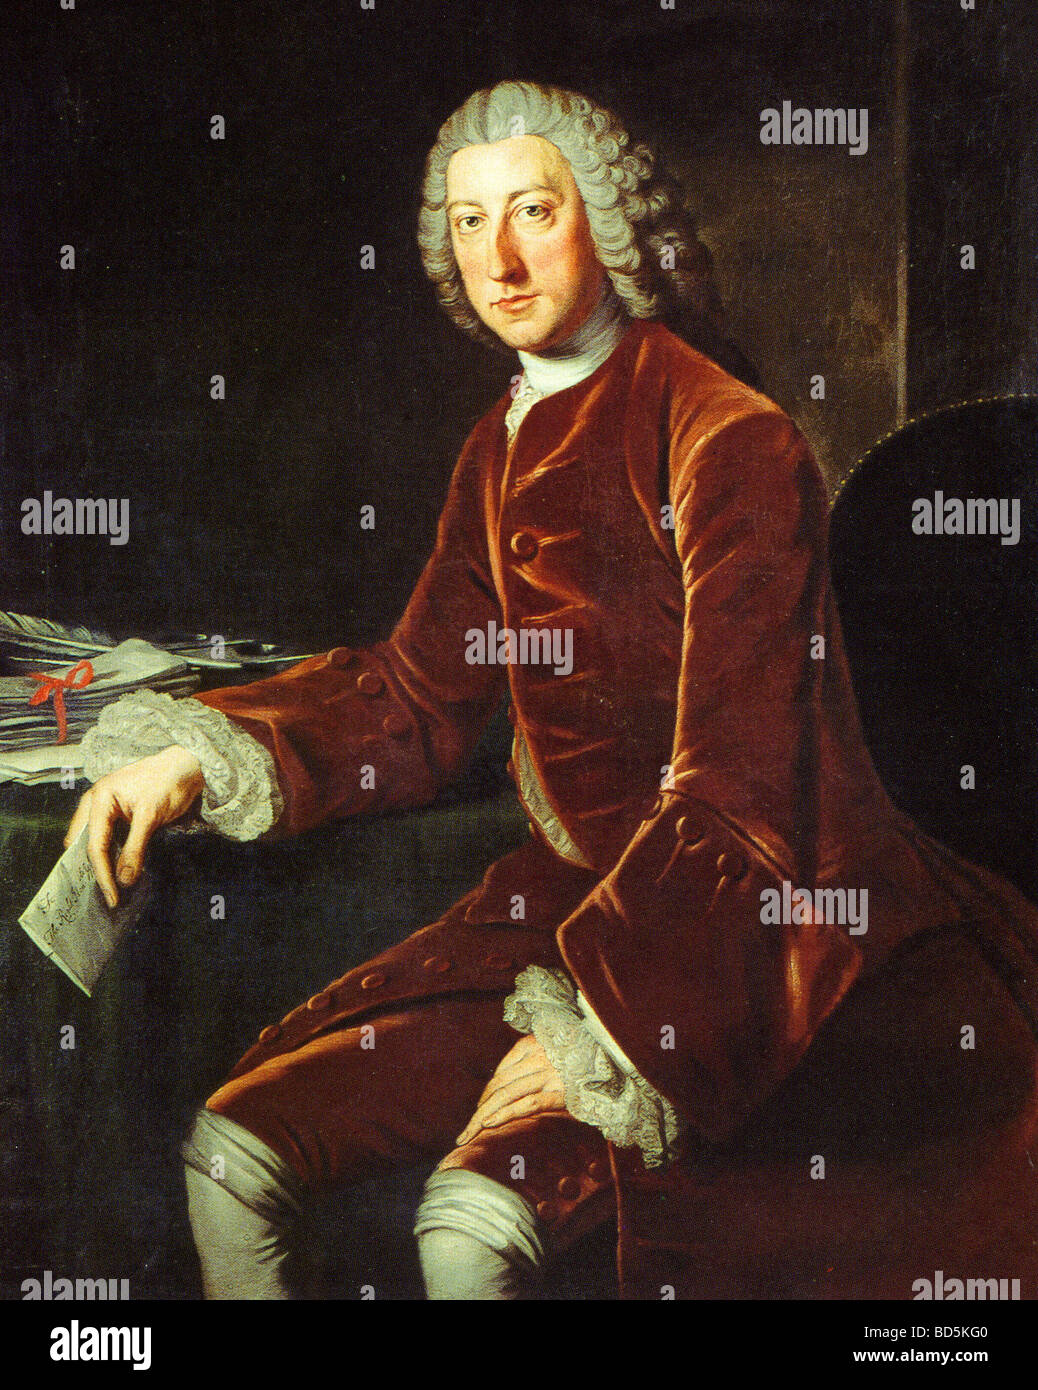 WILLIAM PITT, Ist Earl of Chatham - britische Whig Staatsmann aka William Pitt dem älteren in einem Stich aus dem 18. Jahrhundert Stockfoto